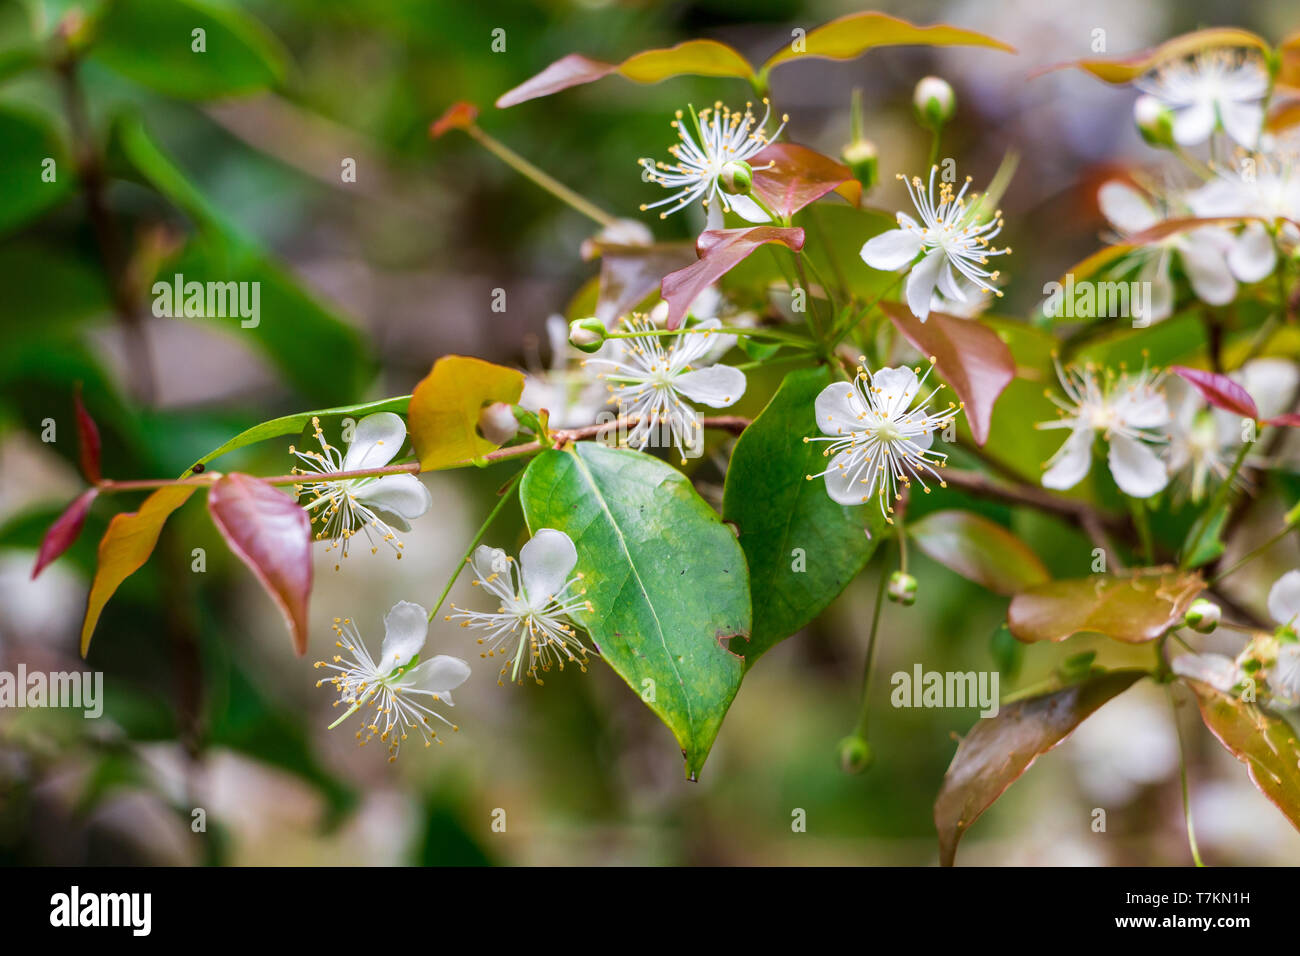 Suriname cherry (Eugenia uniflora) white flowers - Long Key Natural Area, Davie, Florida, USA Stock Photo